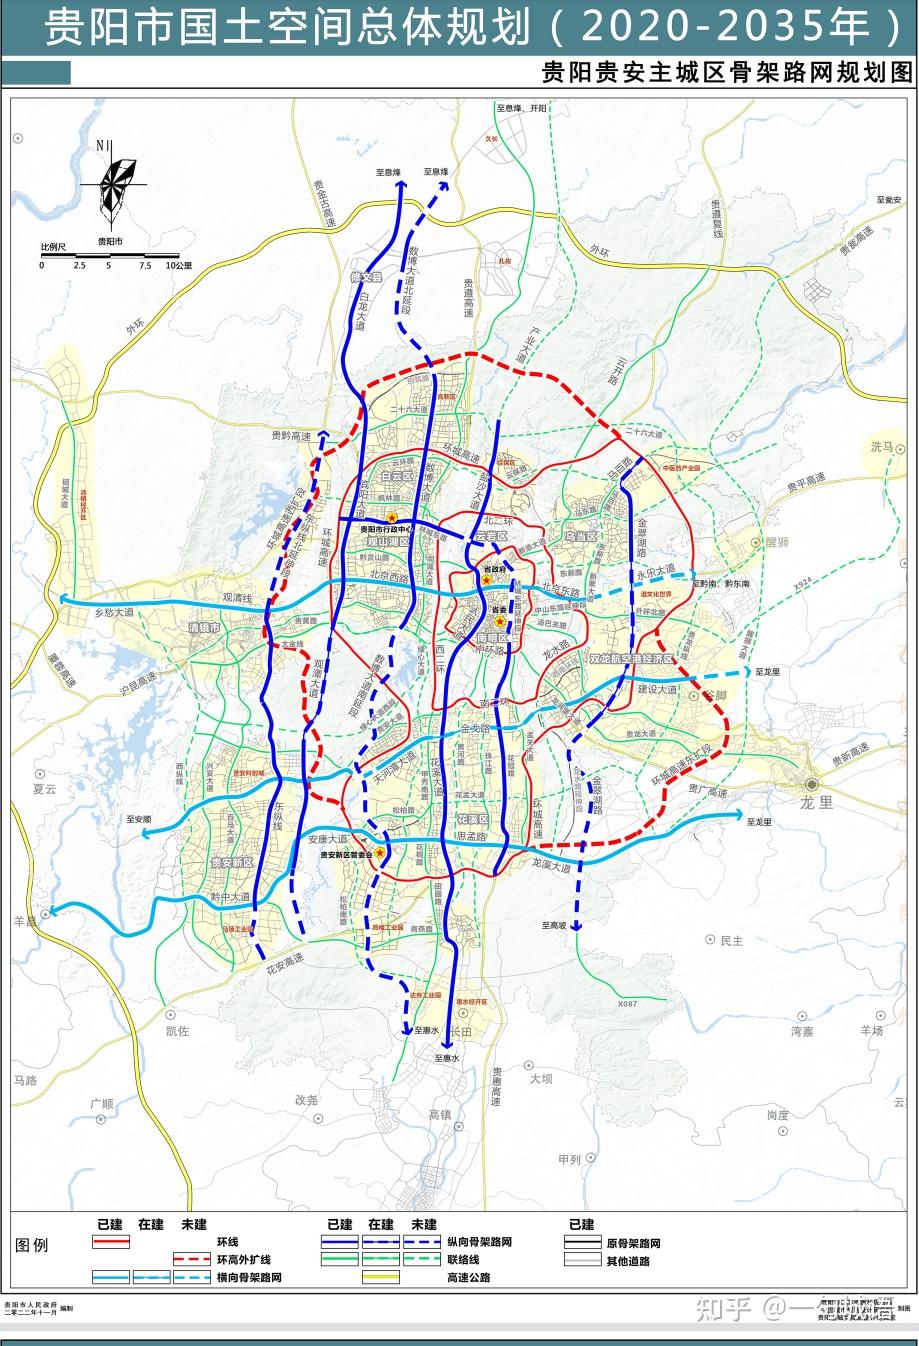 三横六纵三环多联的城市骨架路网,不仅可以缓解现有贵阳城市局部的